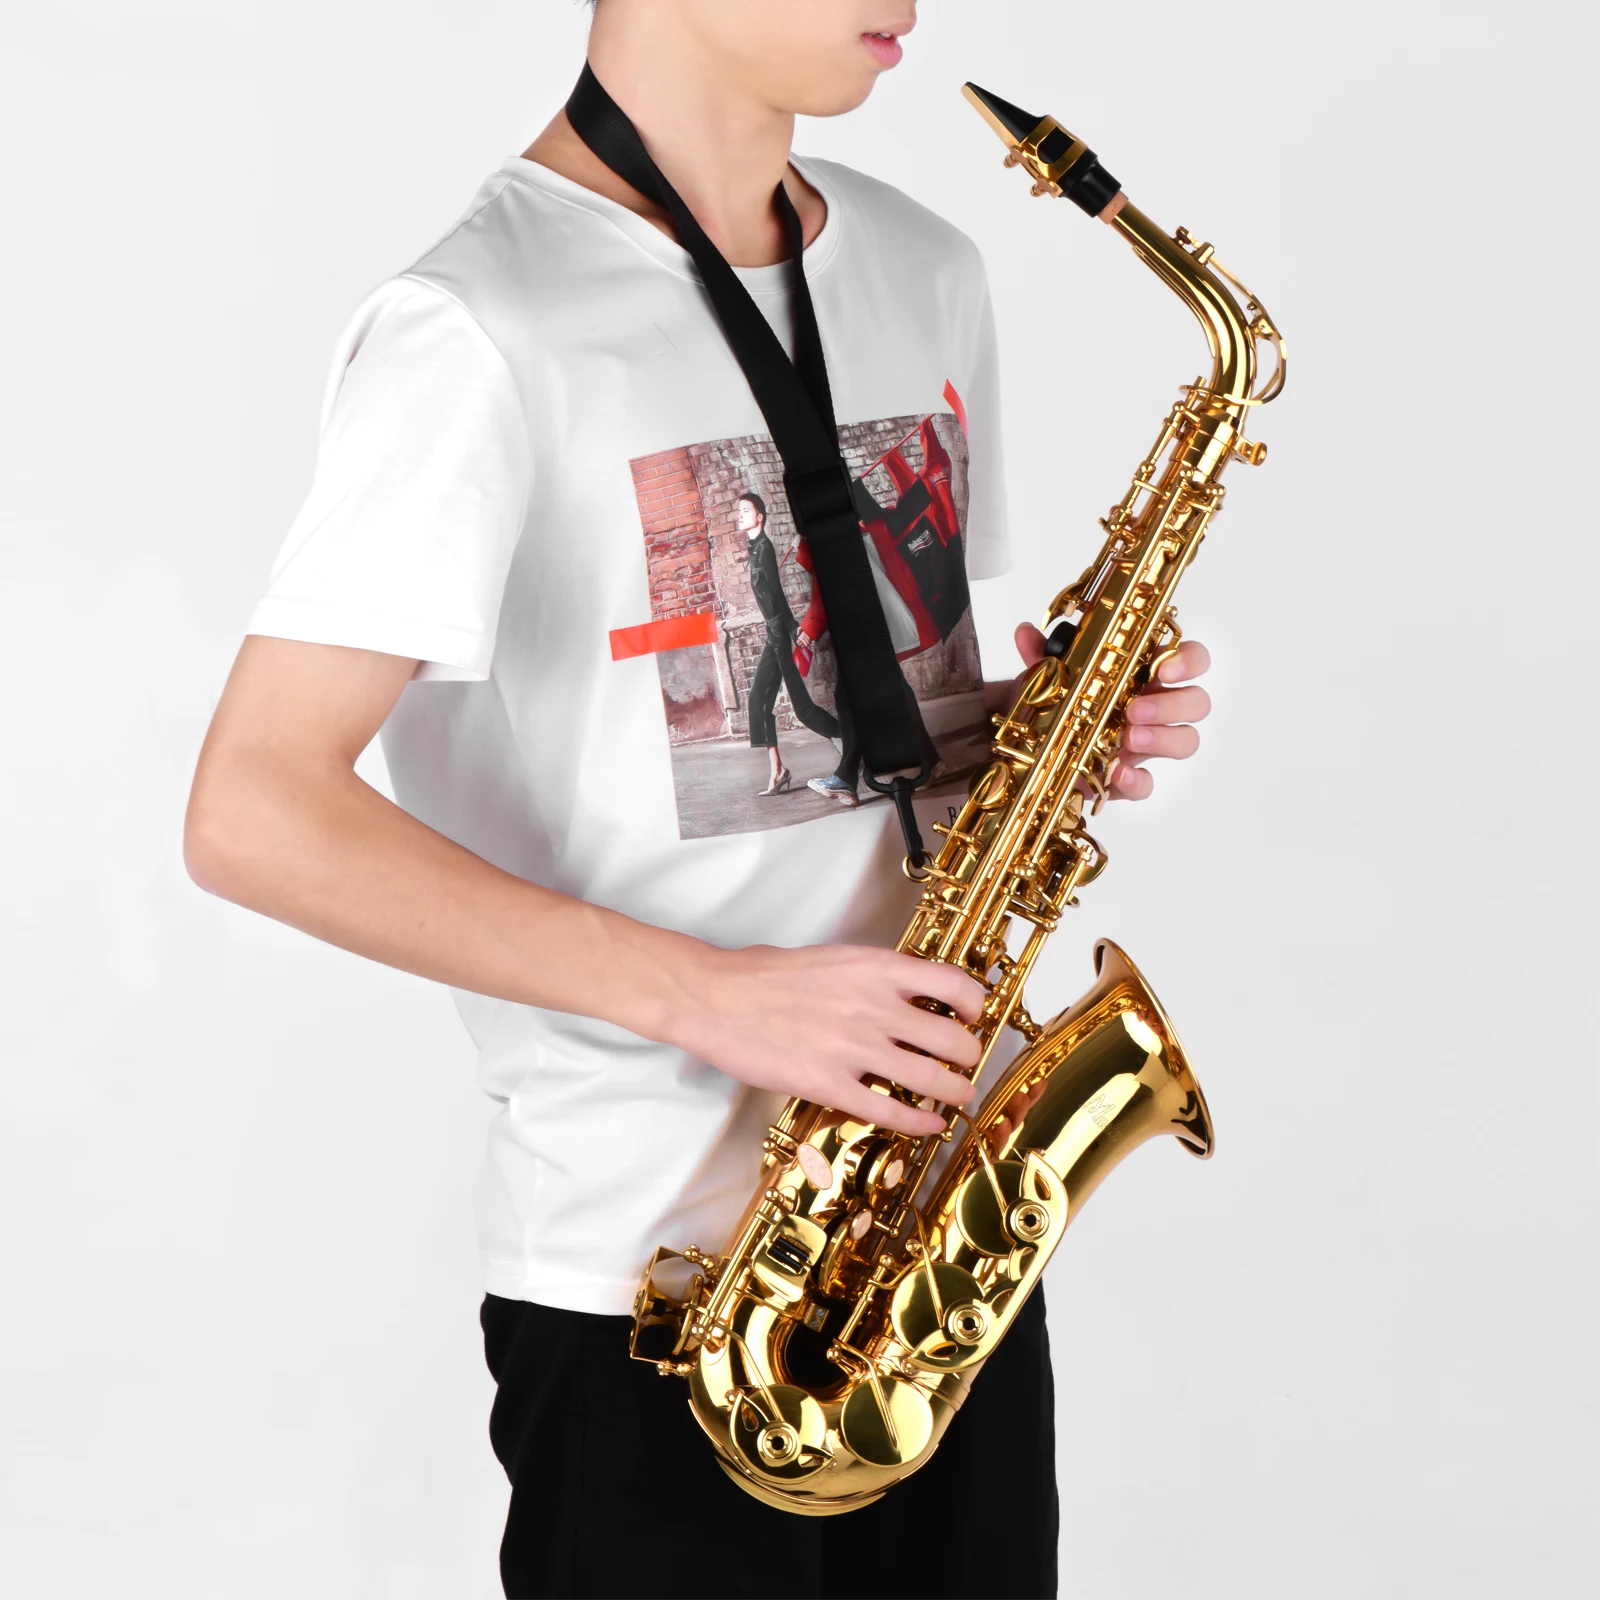 Eb-Altsaxophon, Messing, lackiertes Gold, E-Flach-Altsaxophon, Holzblasinstrument mit Tragetasche, Handschuhen, Riemen, Bürste für Saxophonzubehör